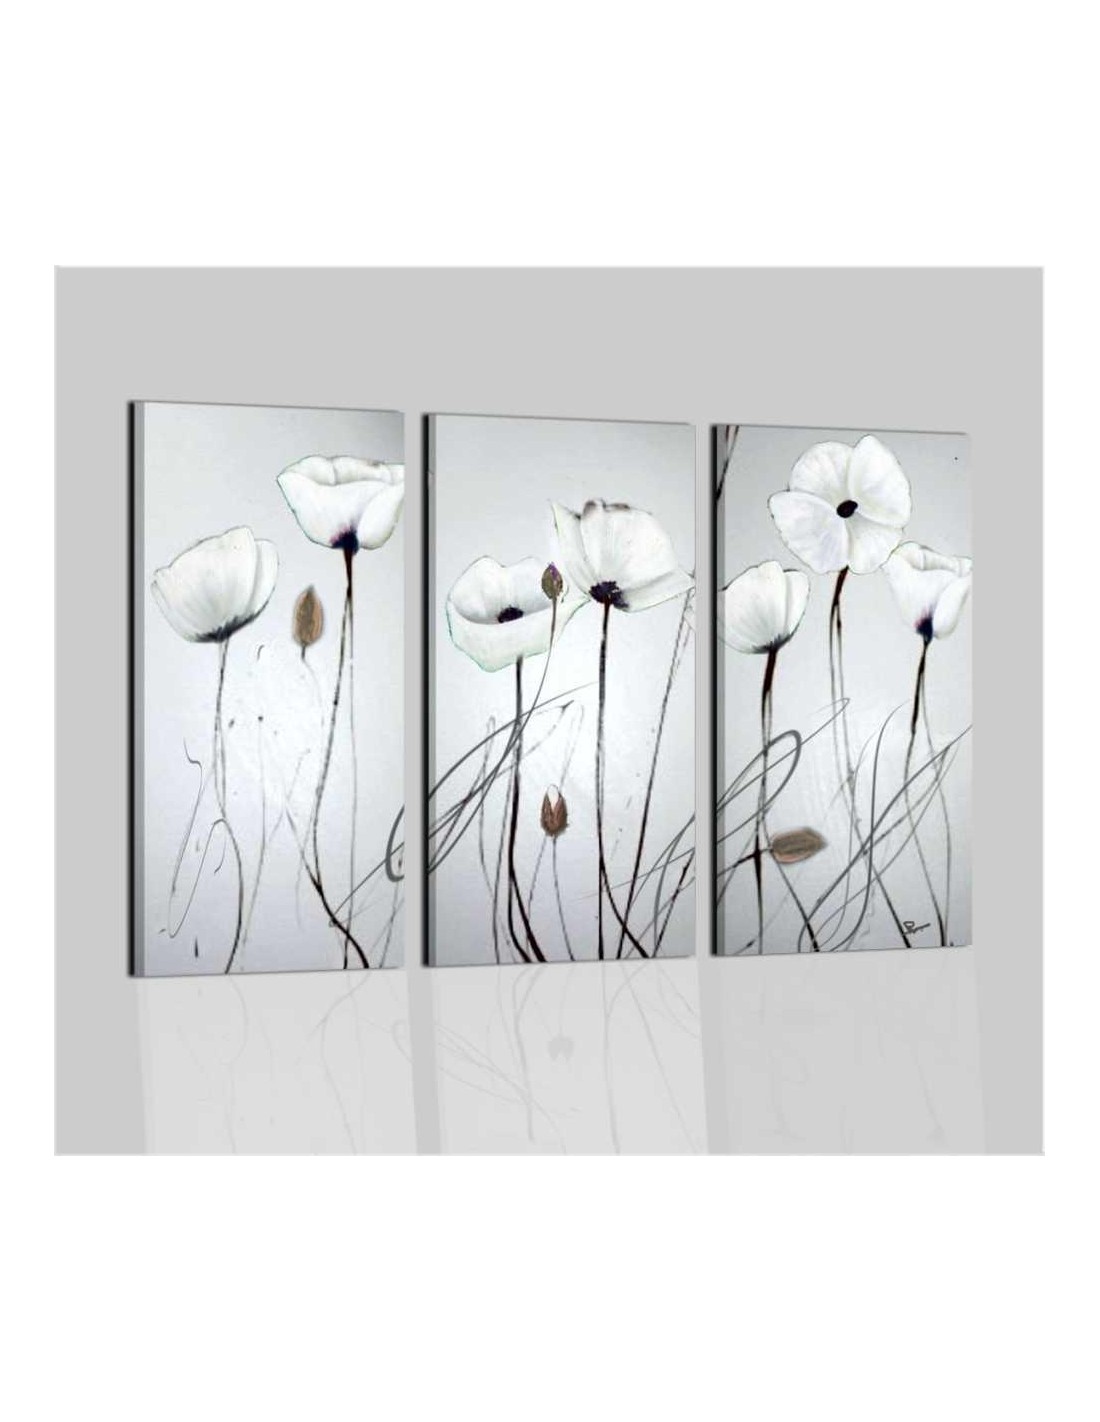 Quadri moderni astratti dipinti a mano su tela bianco nero for Quadri moderni fiori dipinti a mano